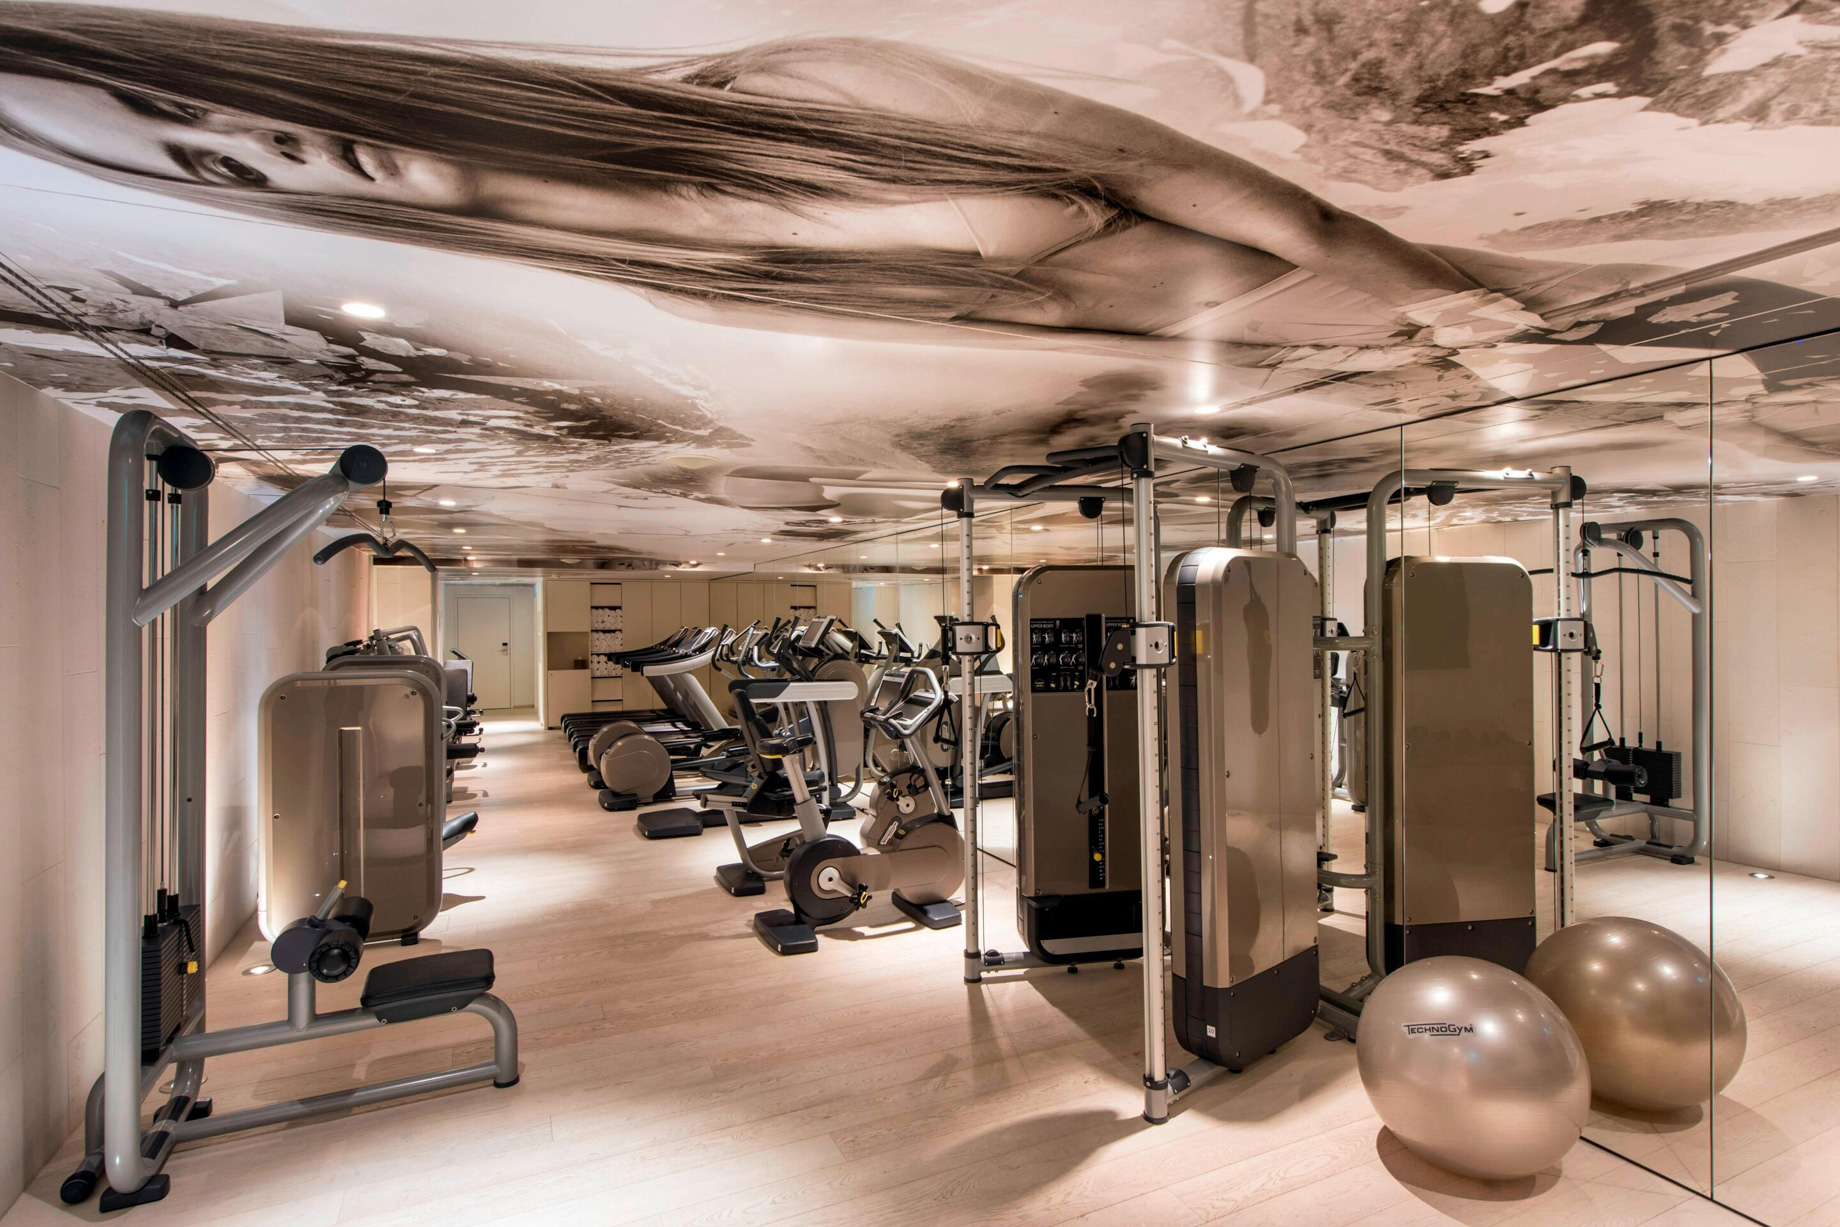 W Verbier Hotel – Verbier, Switzerland – Fitness Center Decor